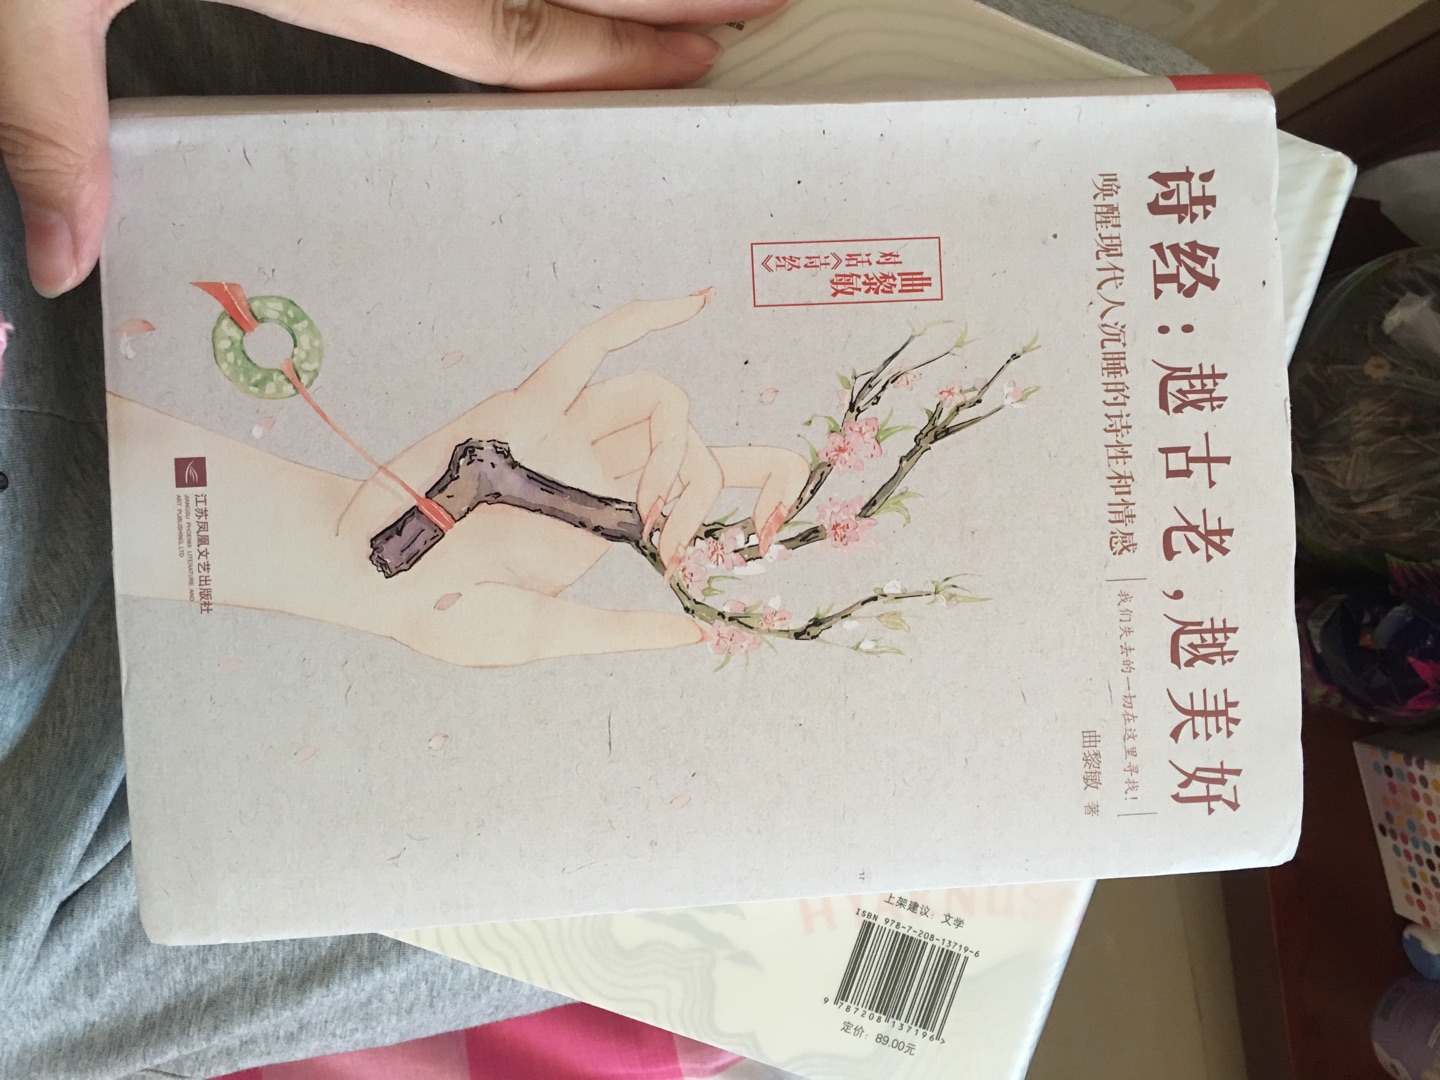 拿回家的第一时间就打开看了，非常不错的一部书哦，应该多一些中国传统文化的书籍，让我们的下一代和我们一起去阅读和品味。